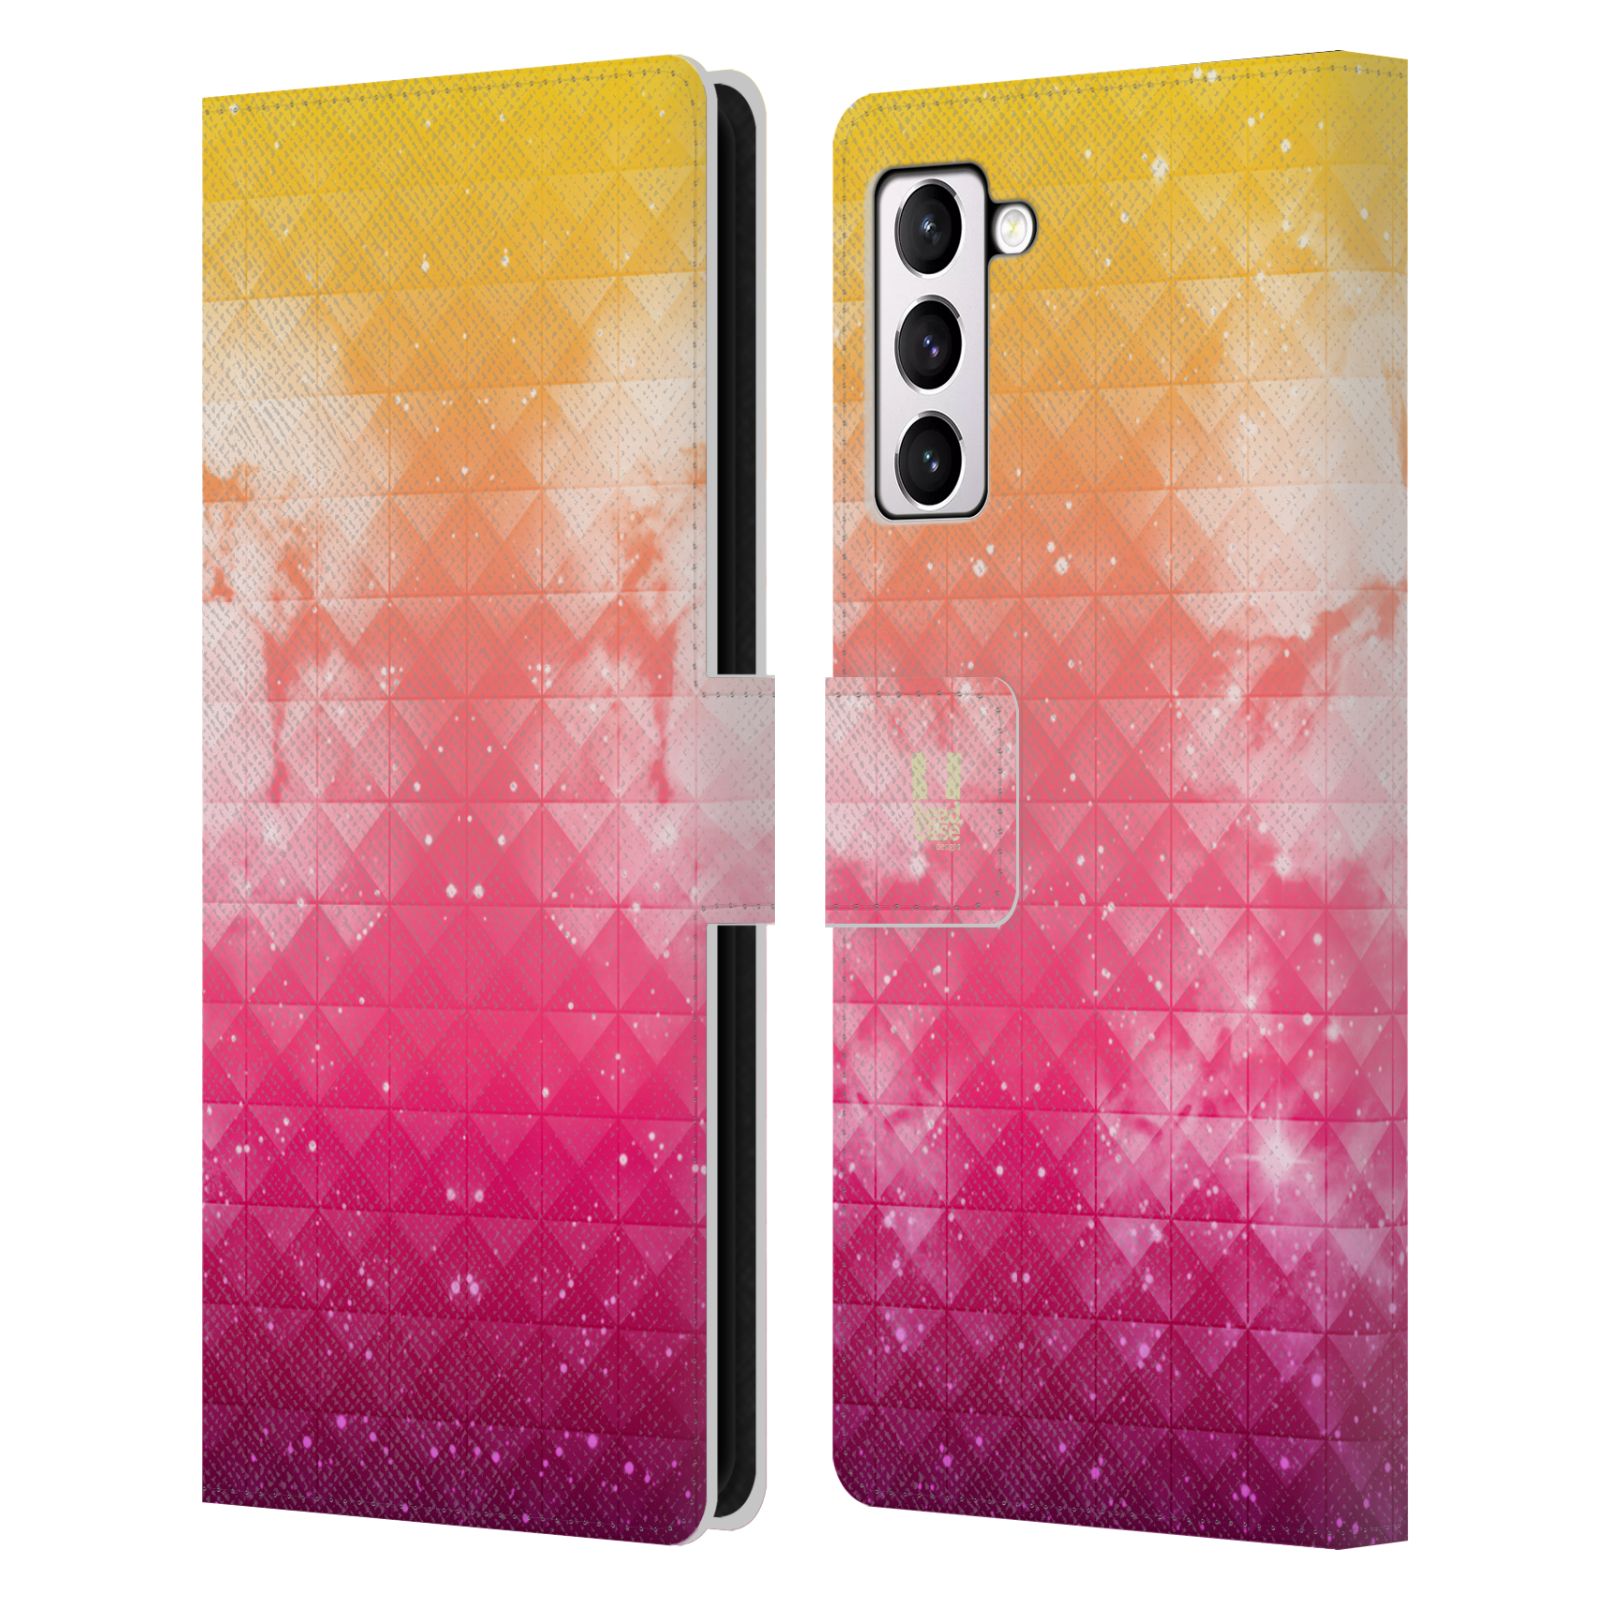 Pouzdro HEAD CASE na mobil Samsung Galaxy S21+ 5G / S21 PLUS 5G barevná vesmírná mlhovina oranžová a růžová